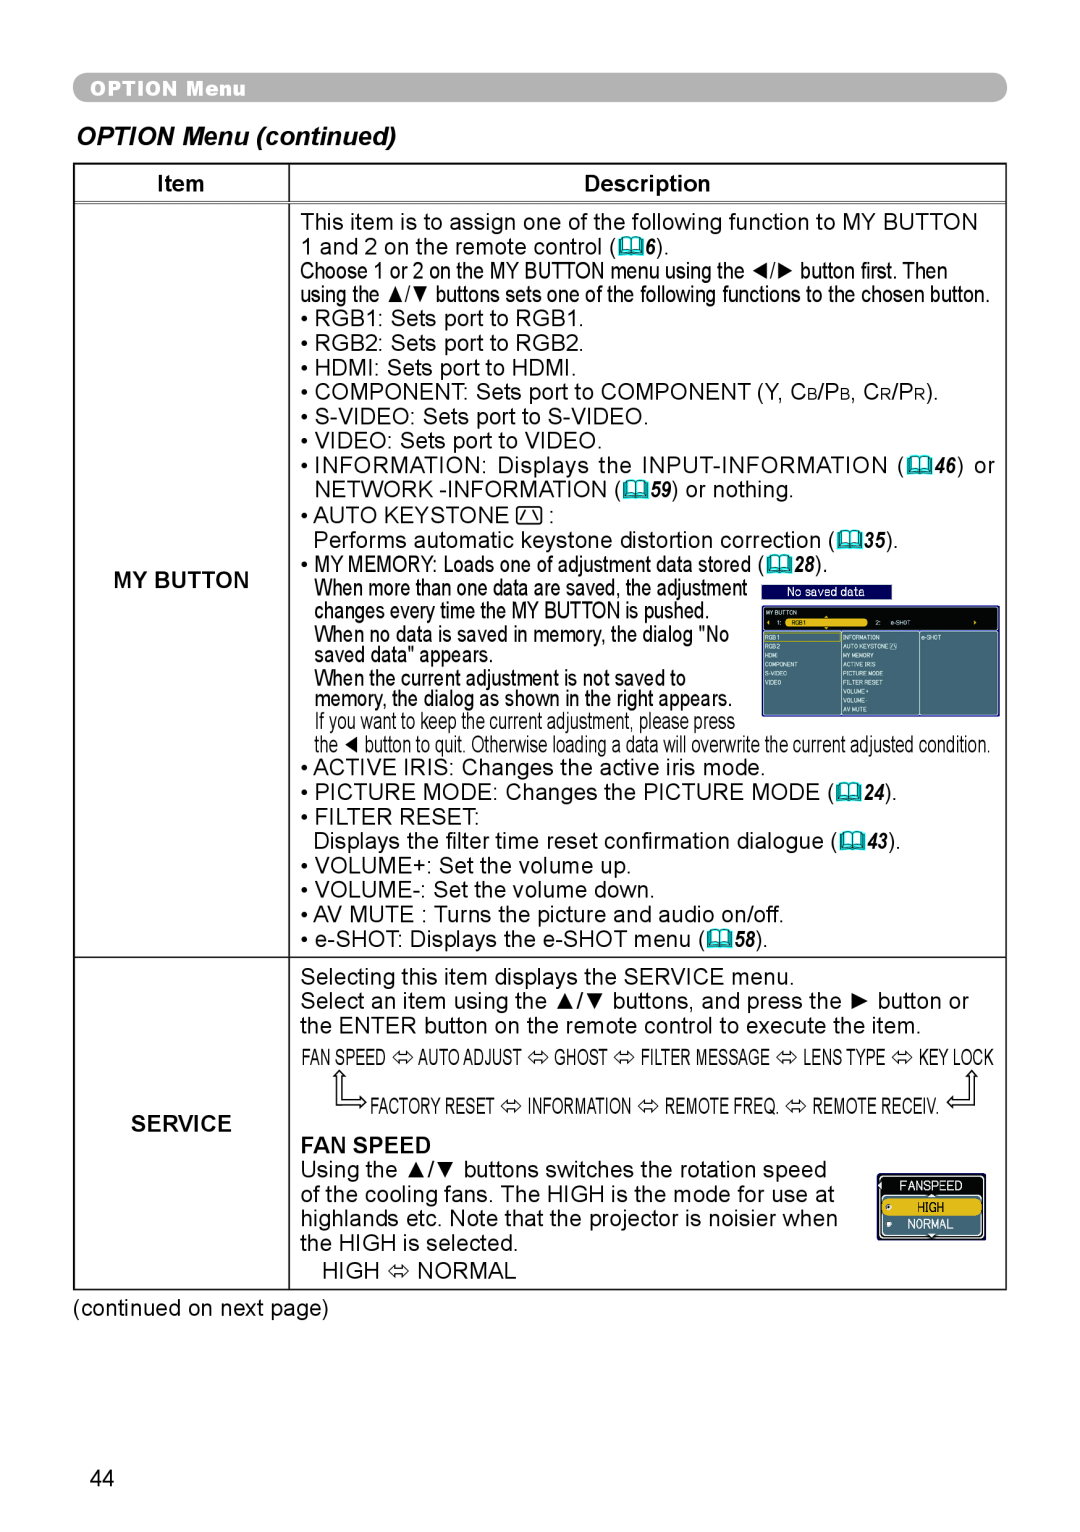 Planar PR9020 user manual OPTION Menu continued, Description, My Button, Service, Fan Speed 